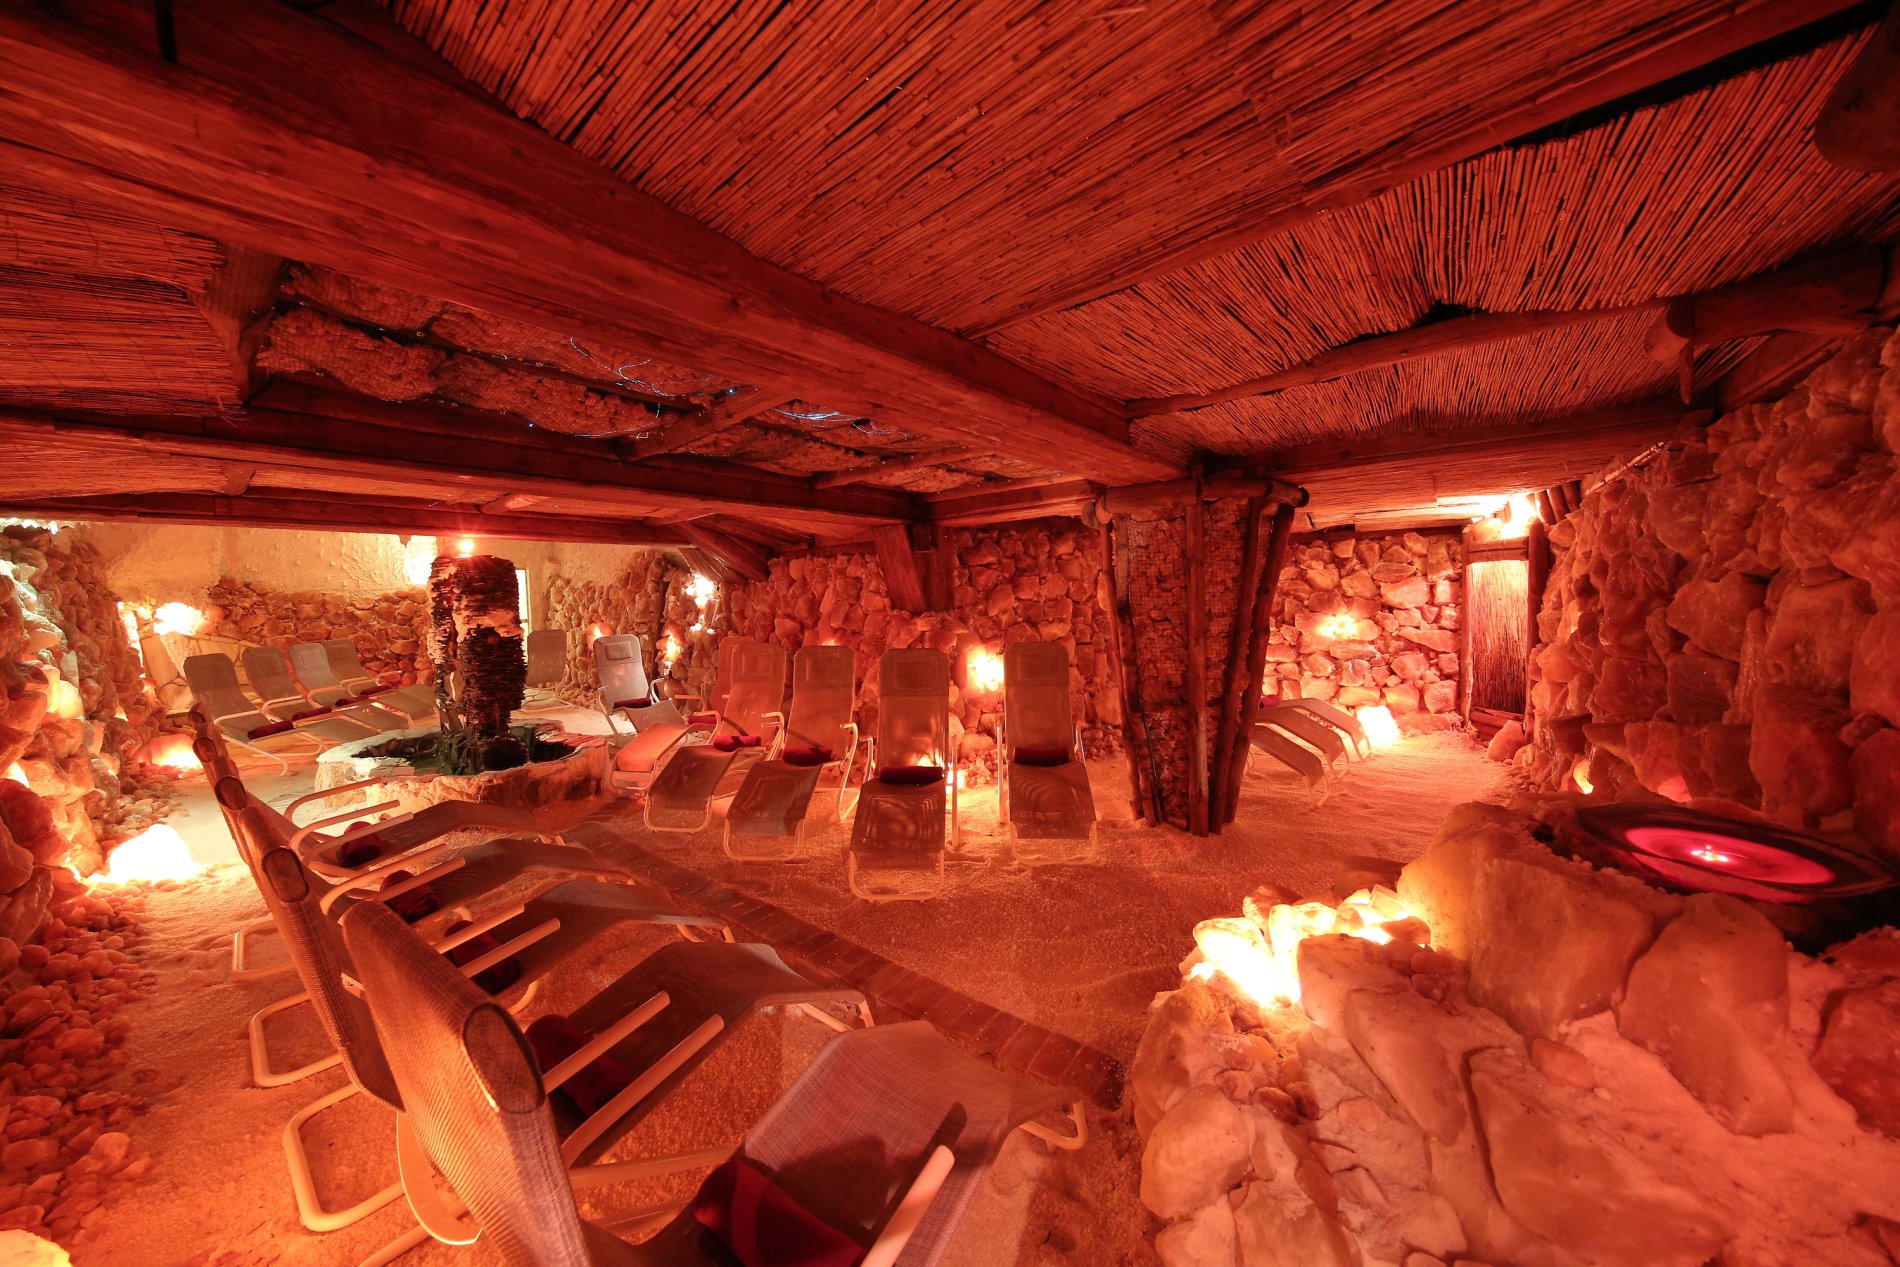 Insight into the salt cave in the Schwäbisch Hall Salt Water Spa